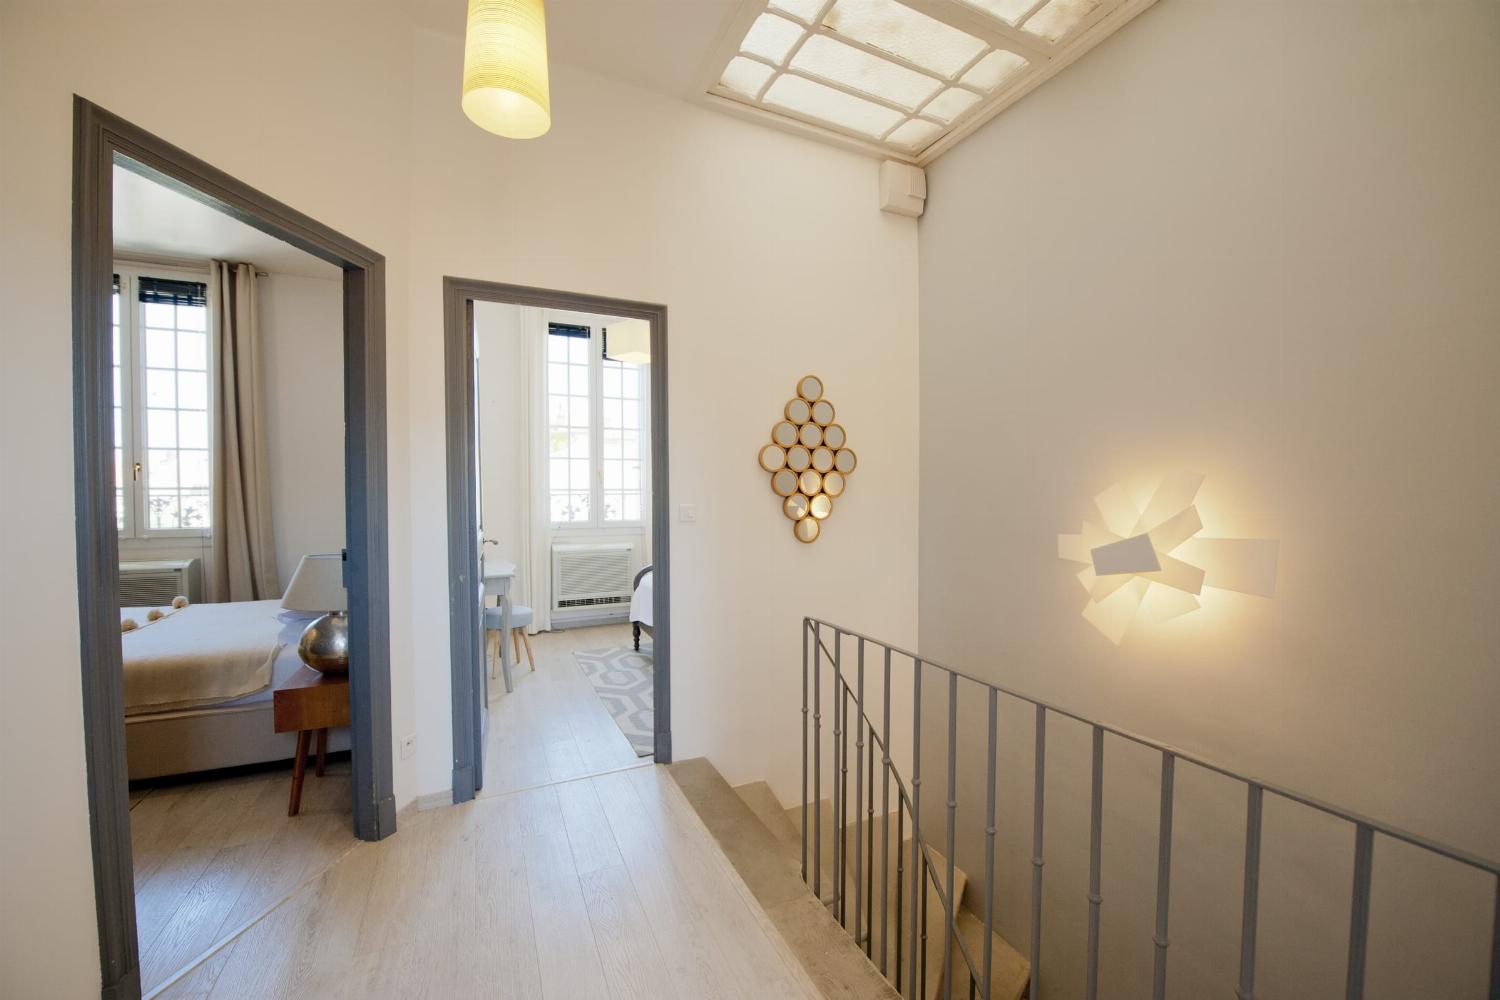 Couloir du 1er étage | Location maison dans le sud de la France